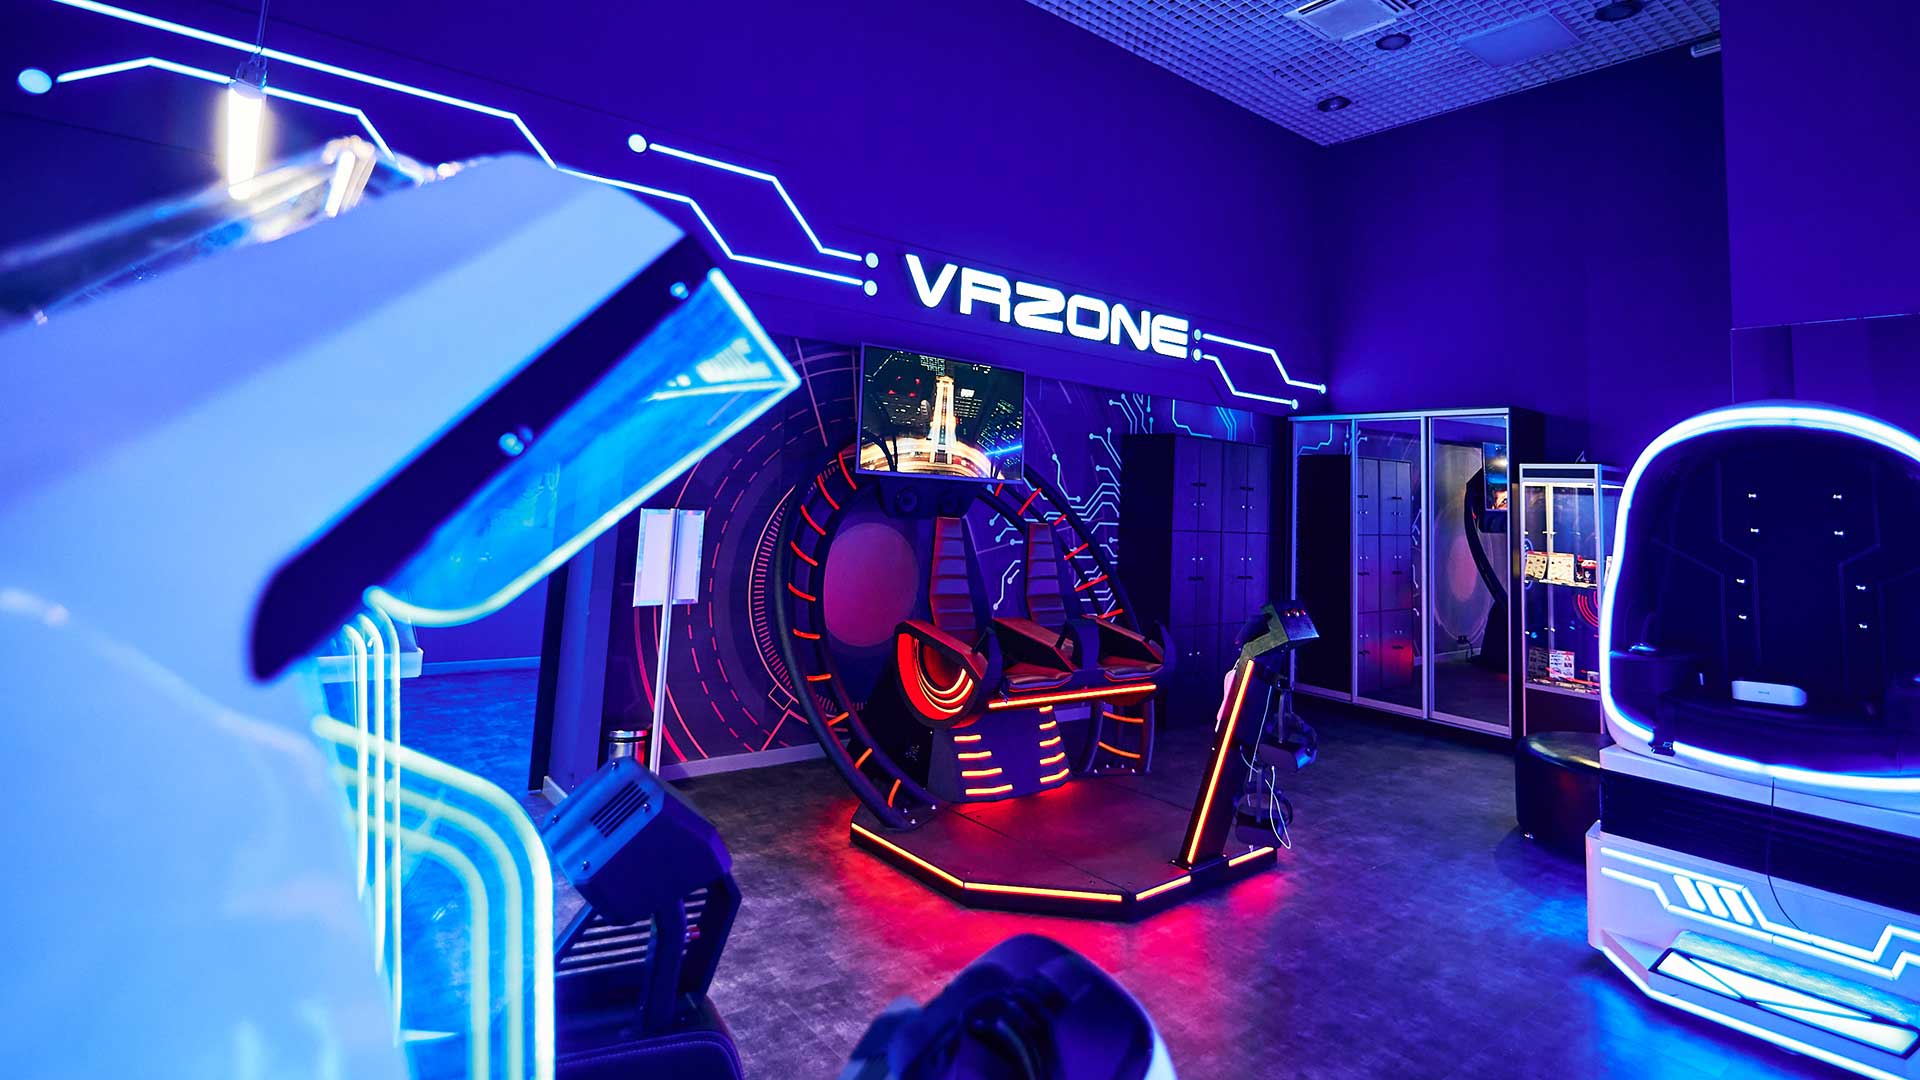 Vr арена warpoint. WARPOINT Арена виртуальной реальности. Игровой клуб. ВР клуб. Аттракцион виртуальной реальности.